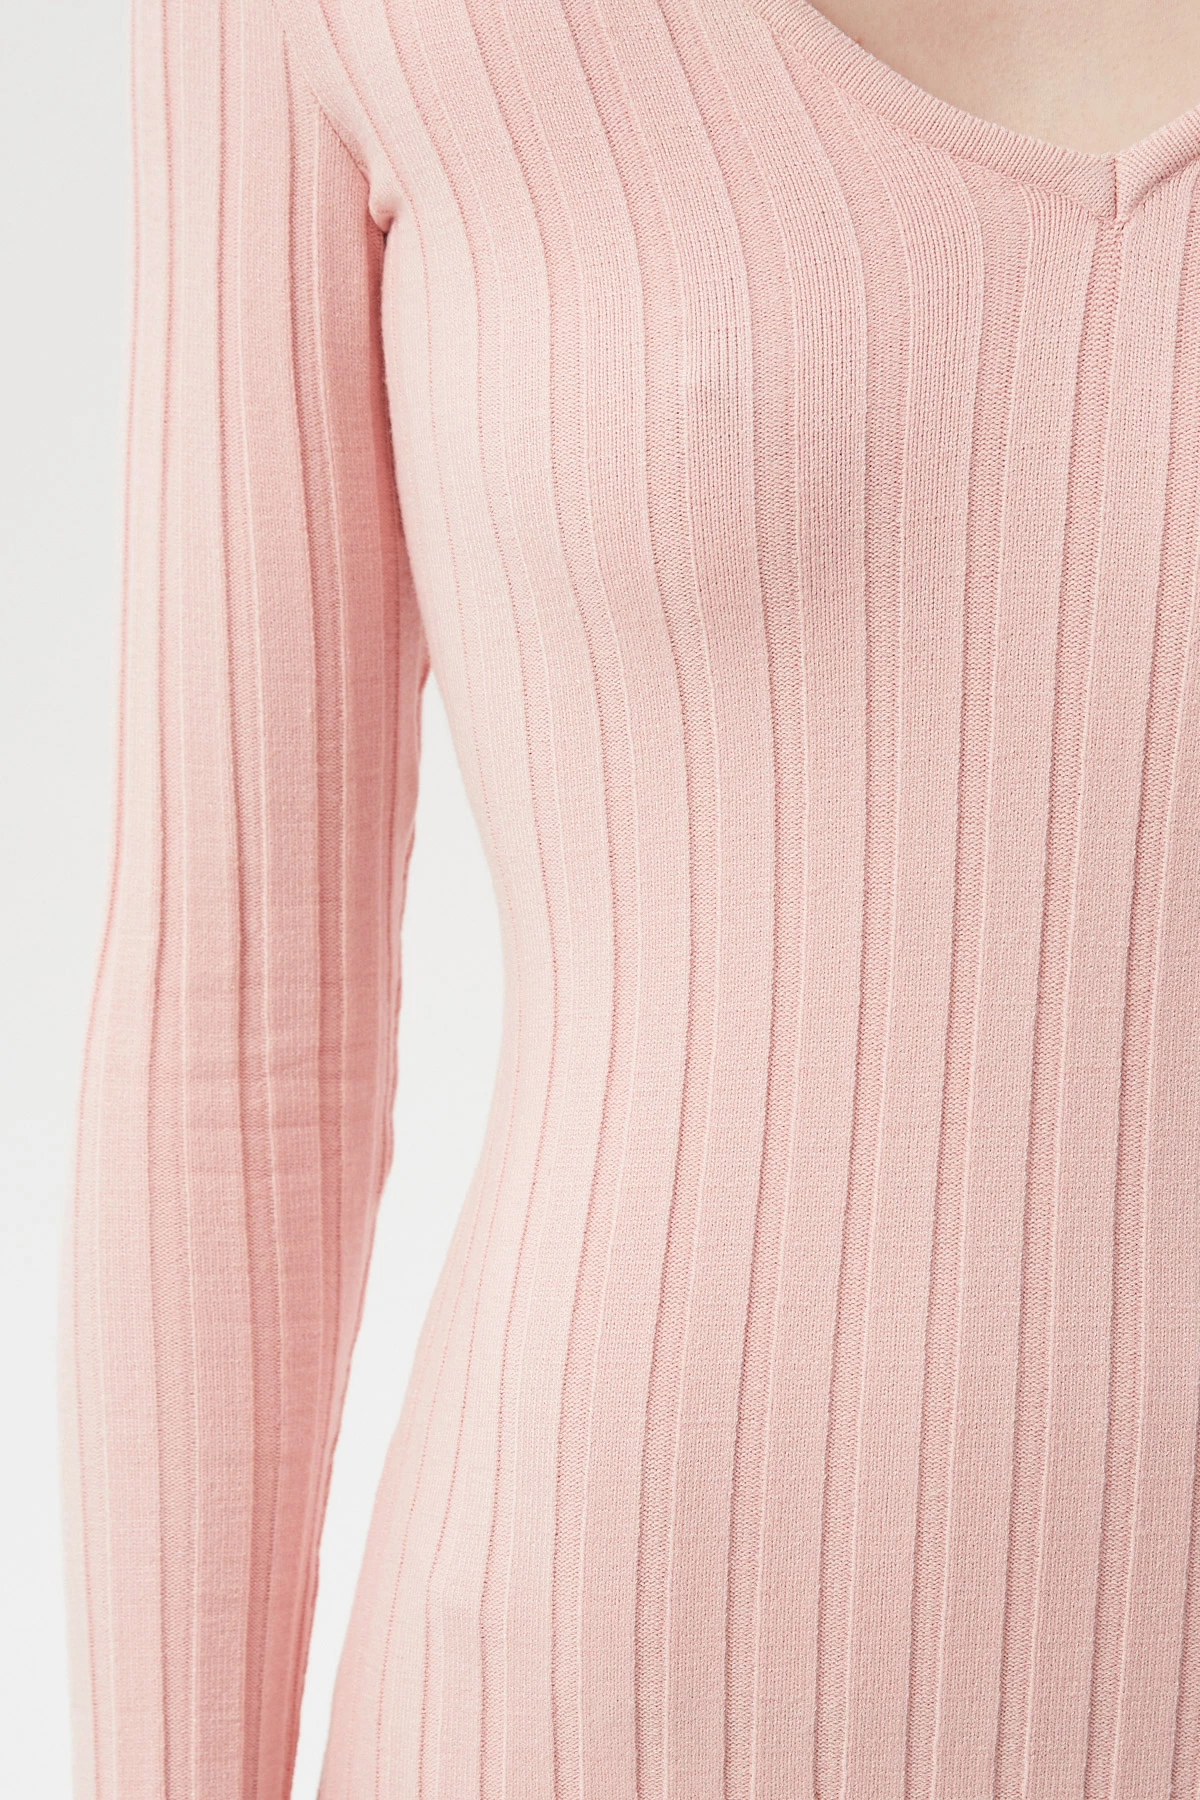 Нежно-розовое вязаное платье миди в широкий рубчик с вискозой, фото 3